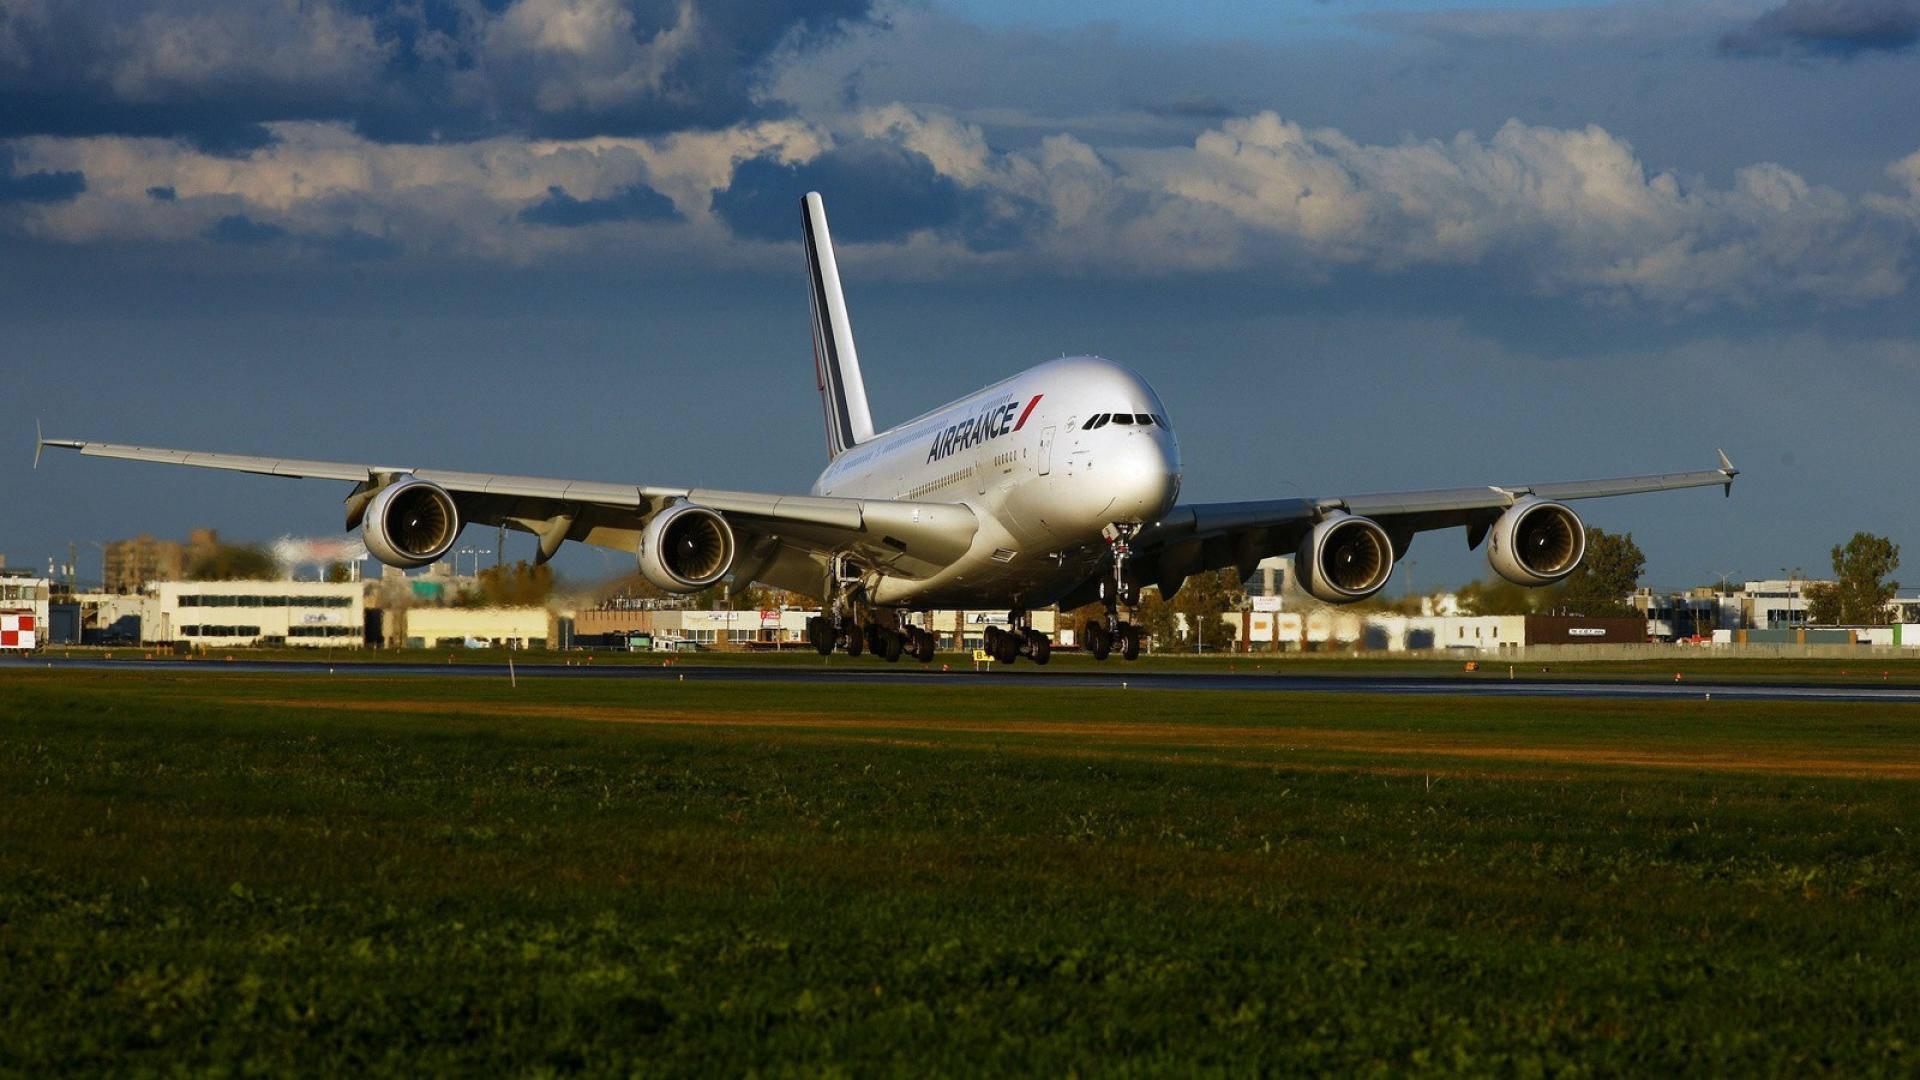 Aereoestetico Air France Airbus A380 Sulla Pista Di Decollo Sfondo